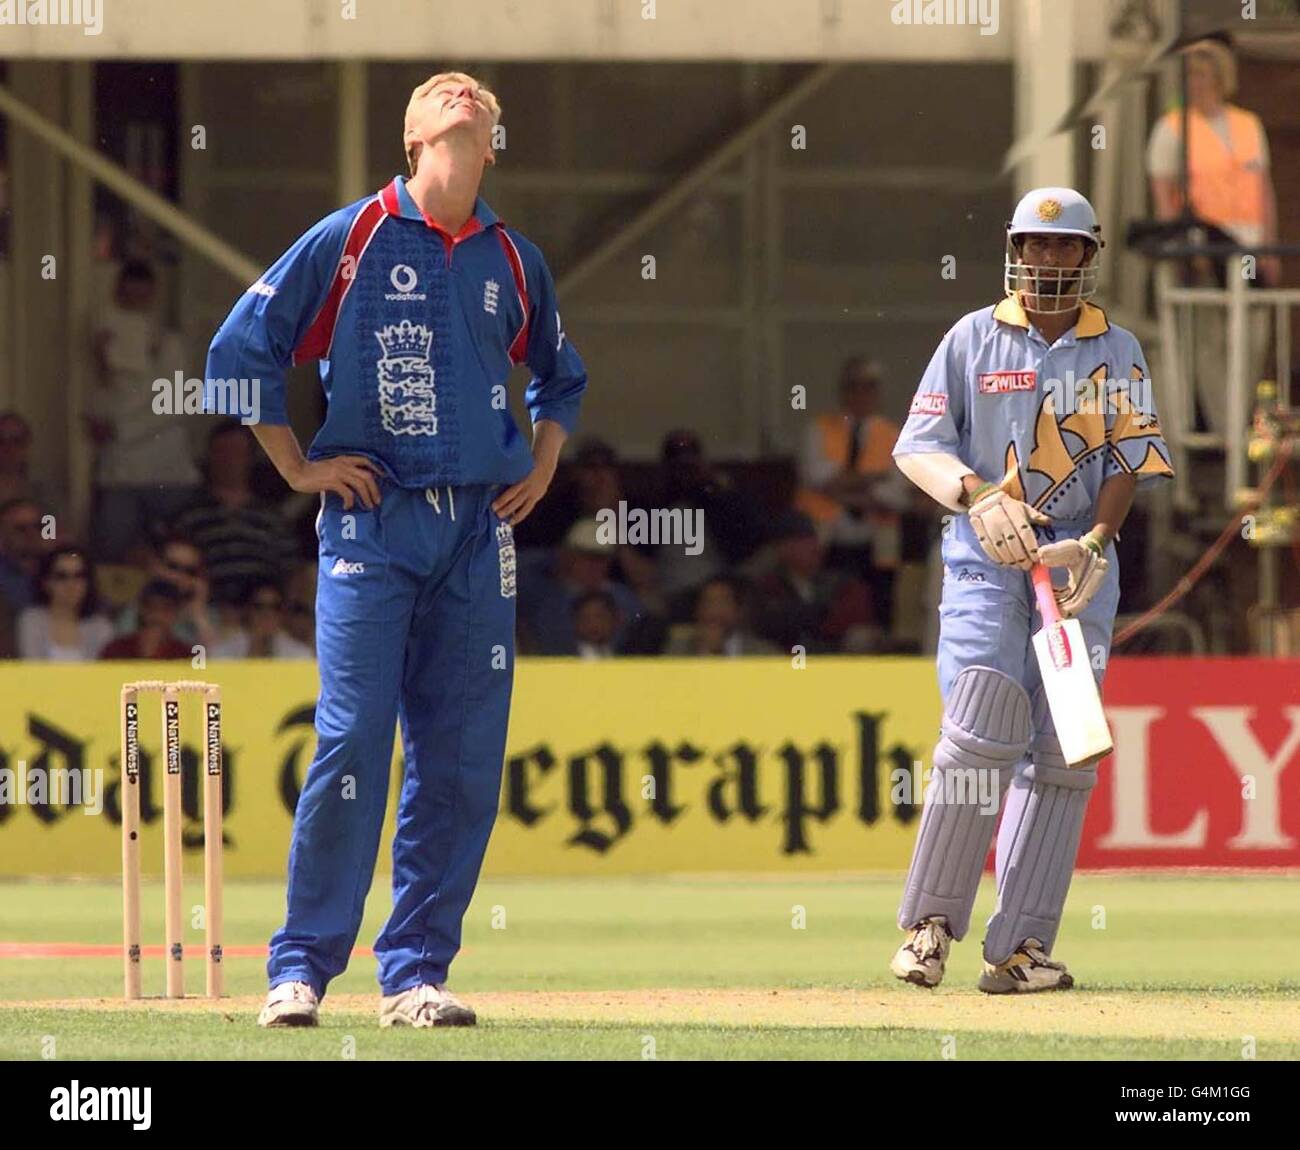 England Bowler Alan Mullally blickt in den Himmel, als er während des 1999 World Cup Cricket-Spiels in Edgbaston gegen den indischen Saurav Ganguly klatschen wird. Stockfoto